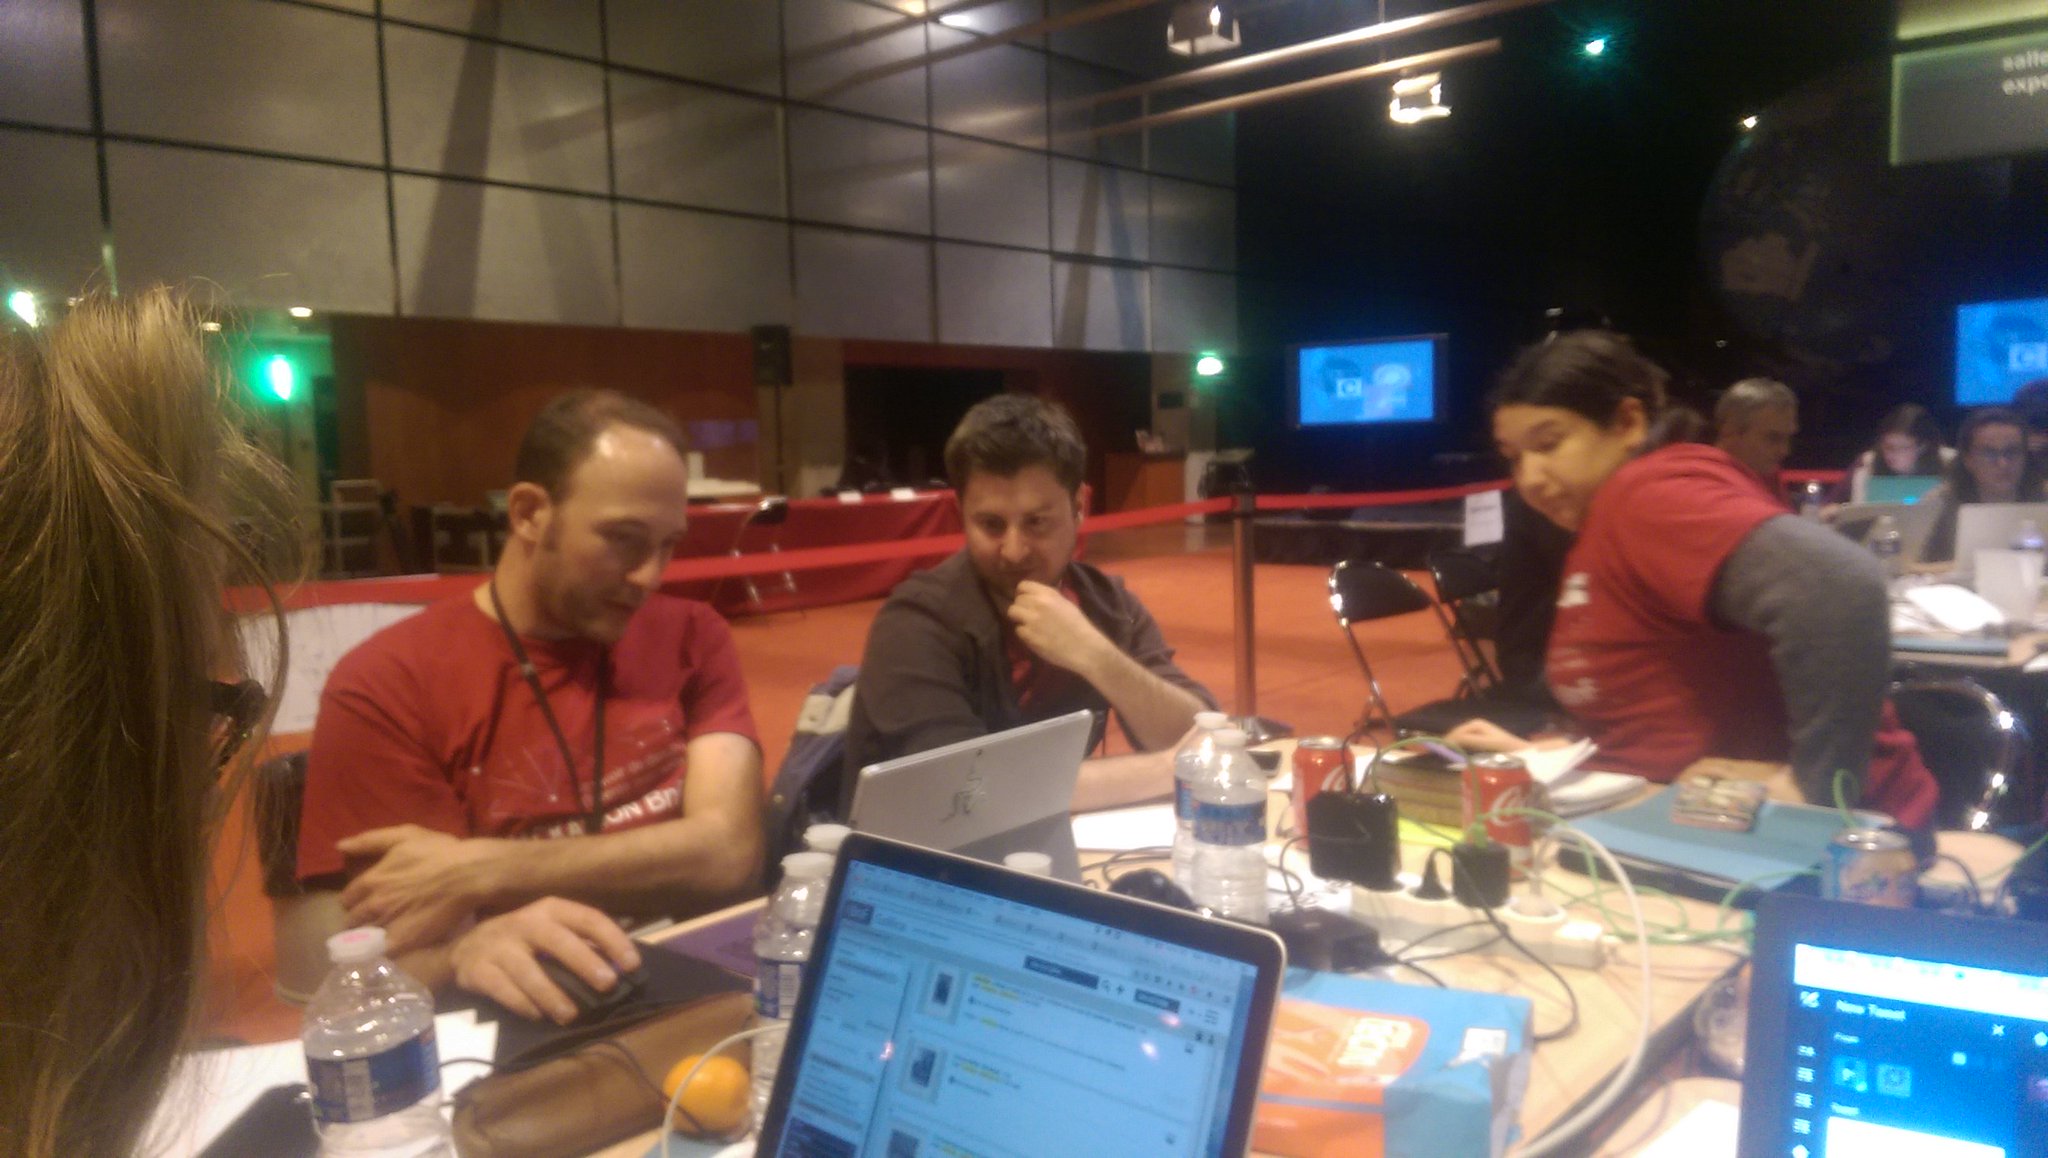 Il est minuit et l'équipe GallicaGame travaille activement sur son projet @laBnF #hackathonBnF https://t.co/tTZHhvp0qD